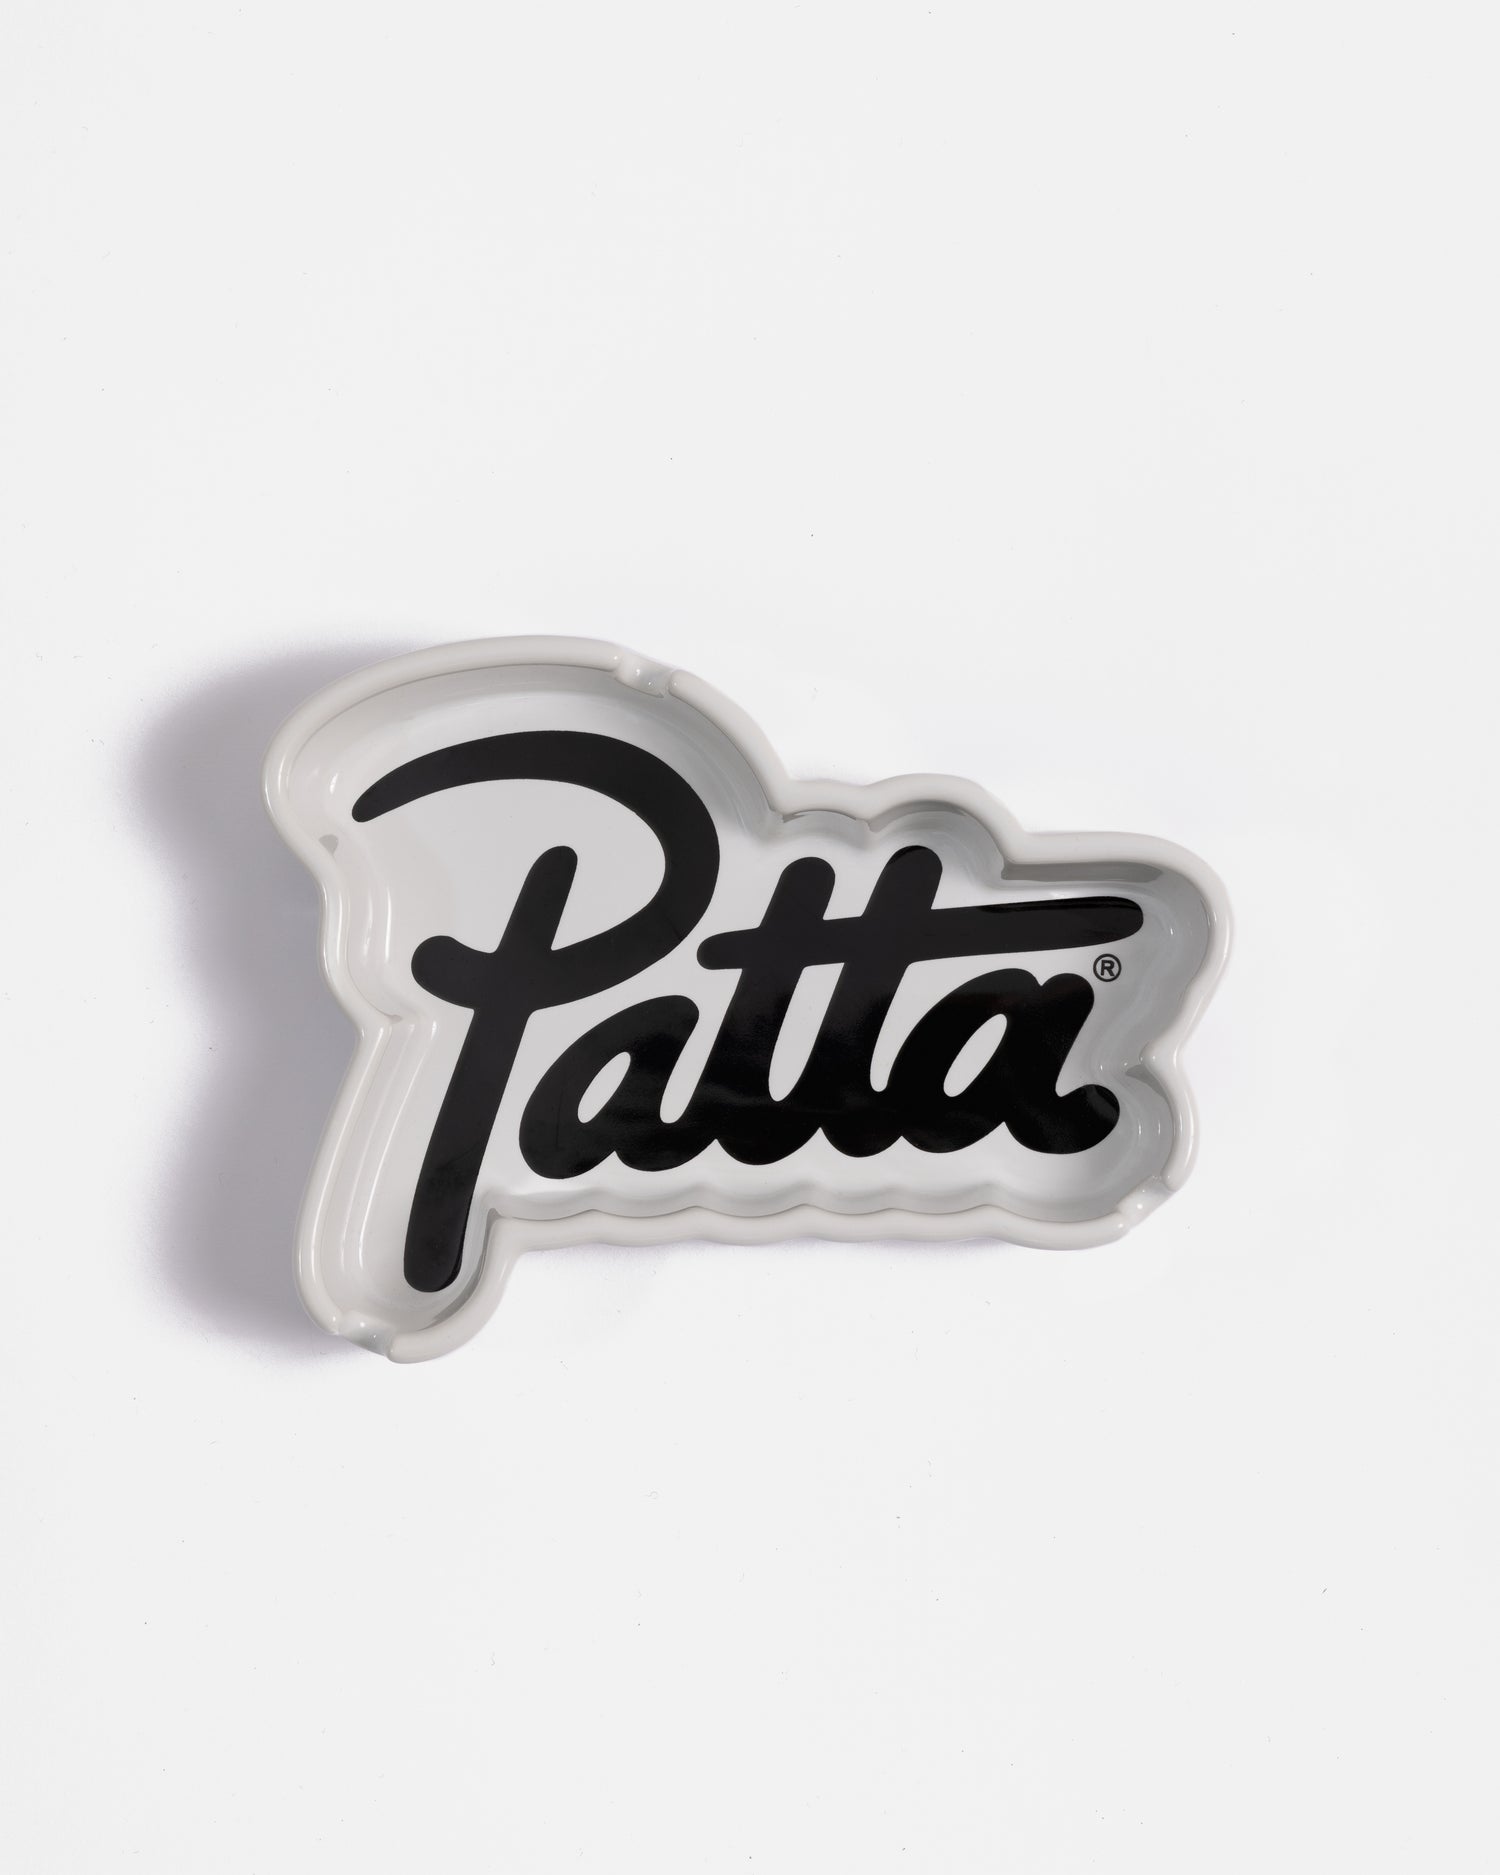 Patta Script Logo Shaped Ashtray (White/Black)